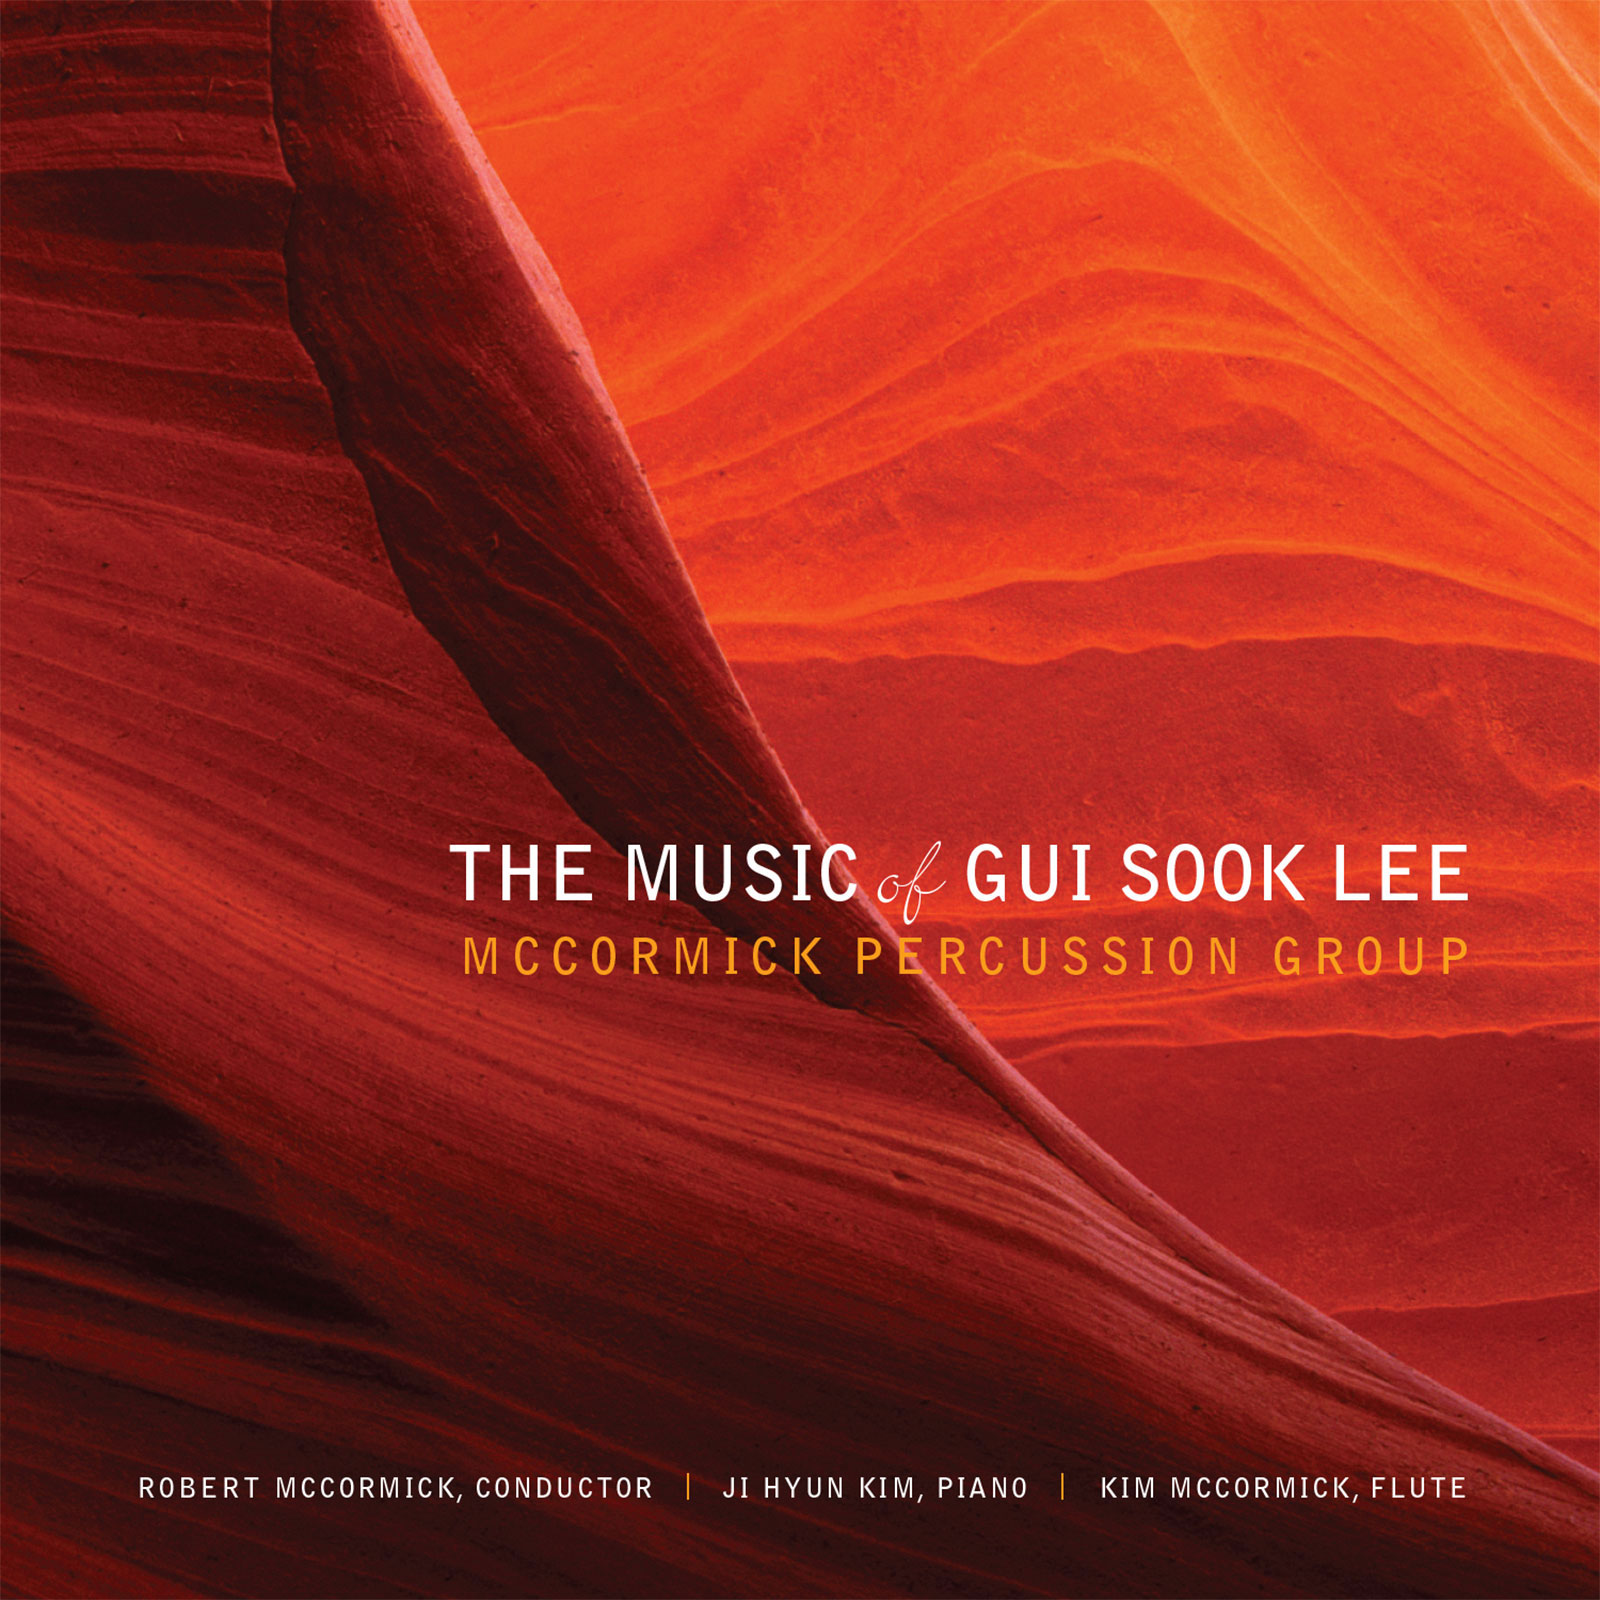 The Music of Gui Sook Lee